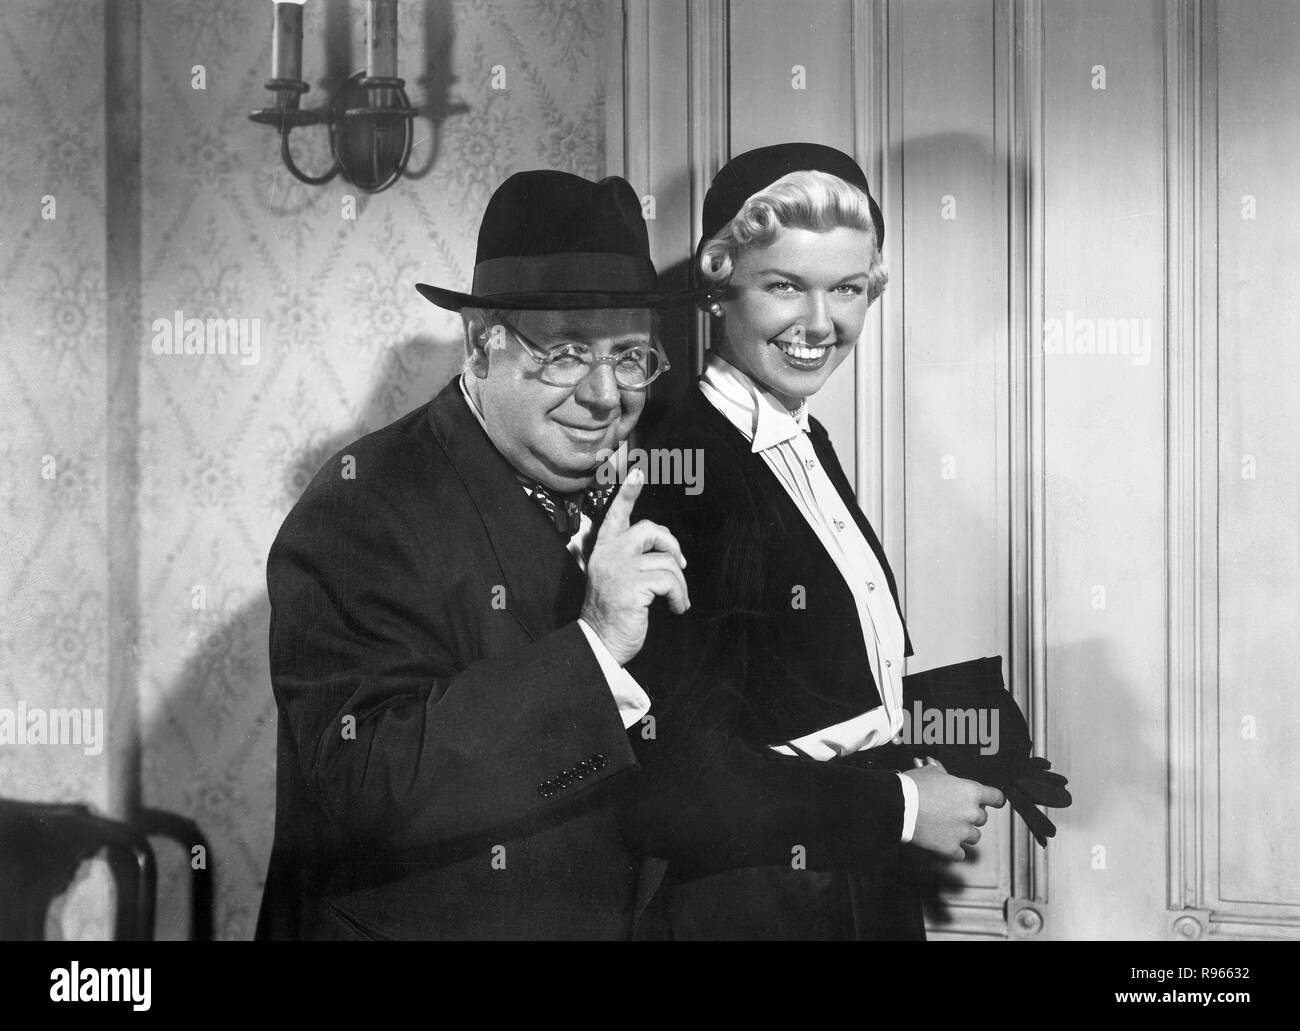 Das Wiegenlied vom Broadway (Lullaby of Broadway) USA 1951 Regie: David Butler Darsteller: Doris Day, S.Z. Sakall, Stock Photo